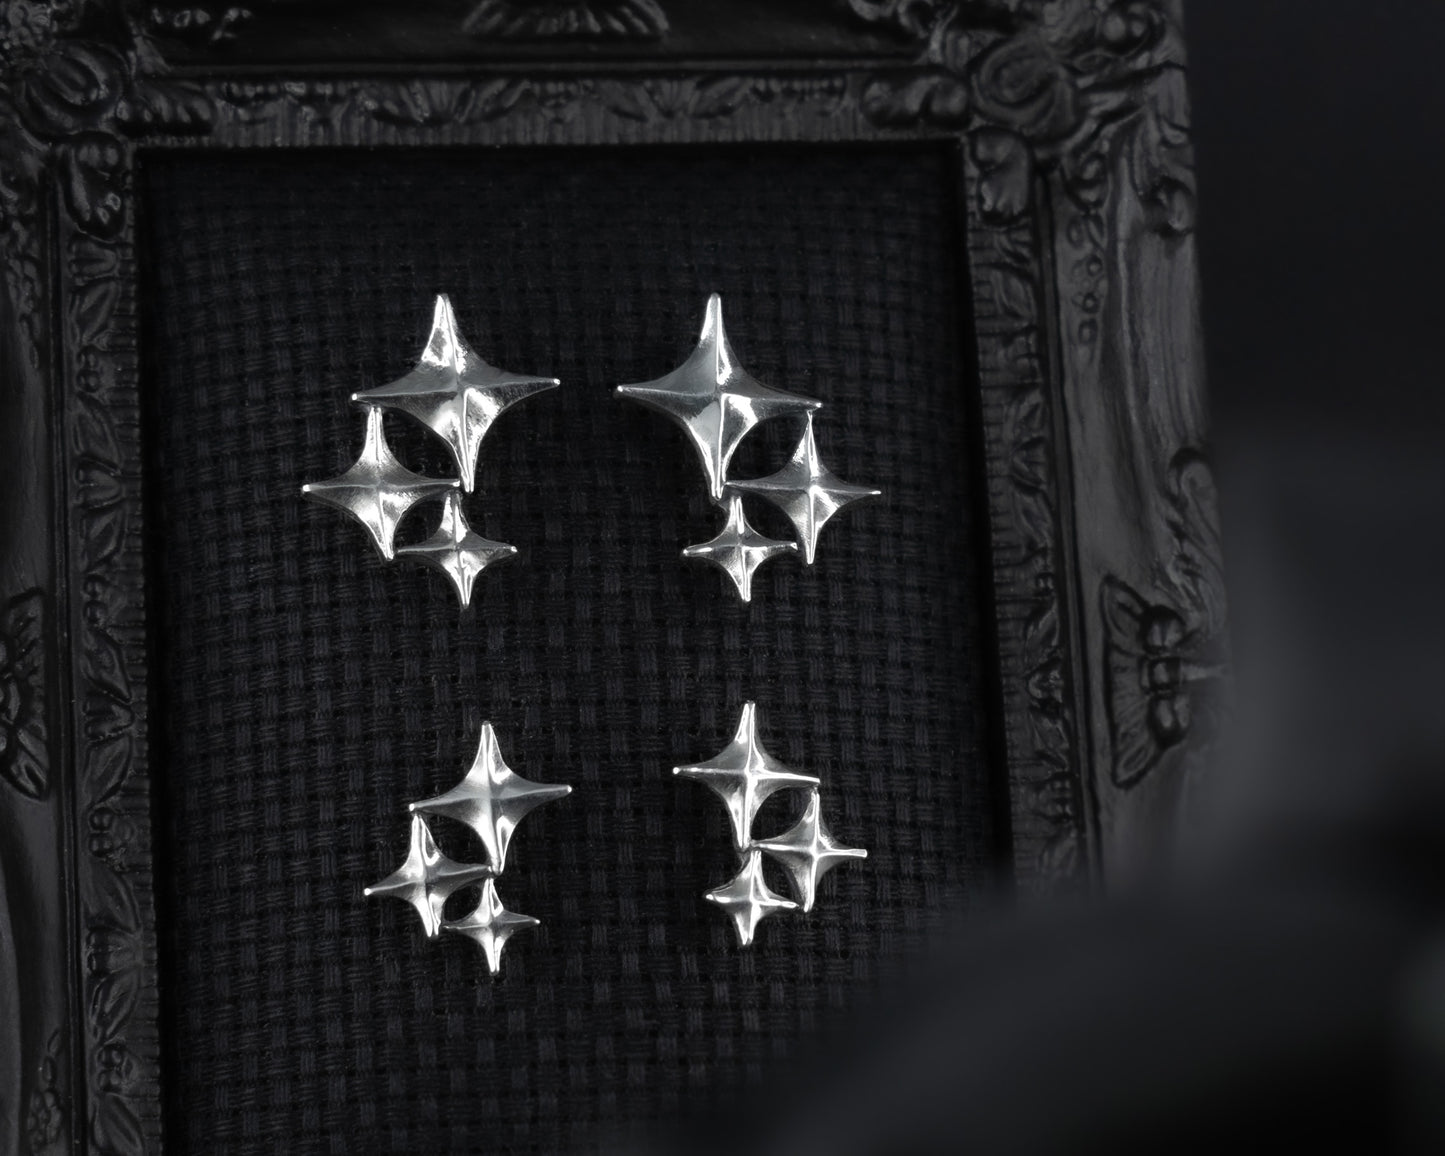 EKRJ605 Triple Twinkle Star Silver Earrings